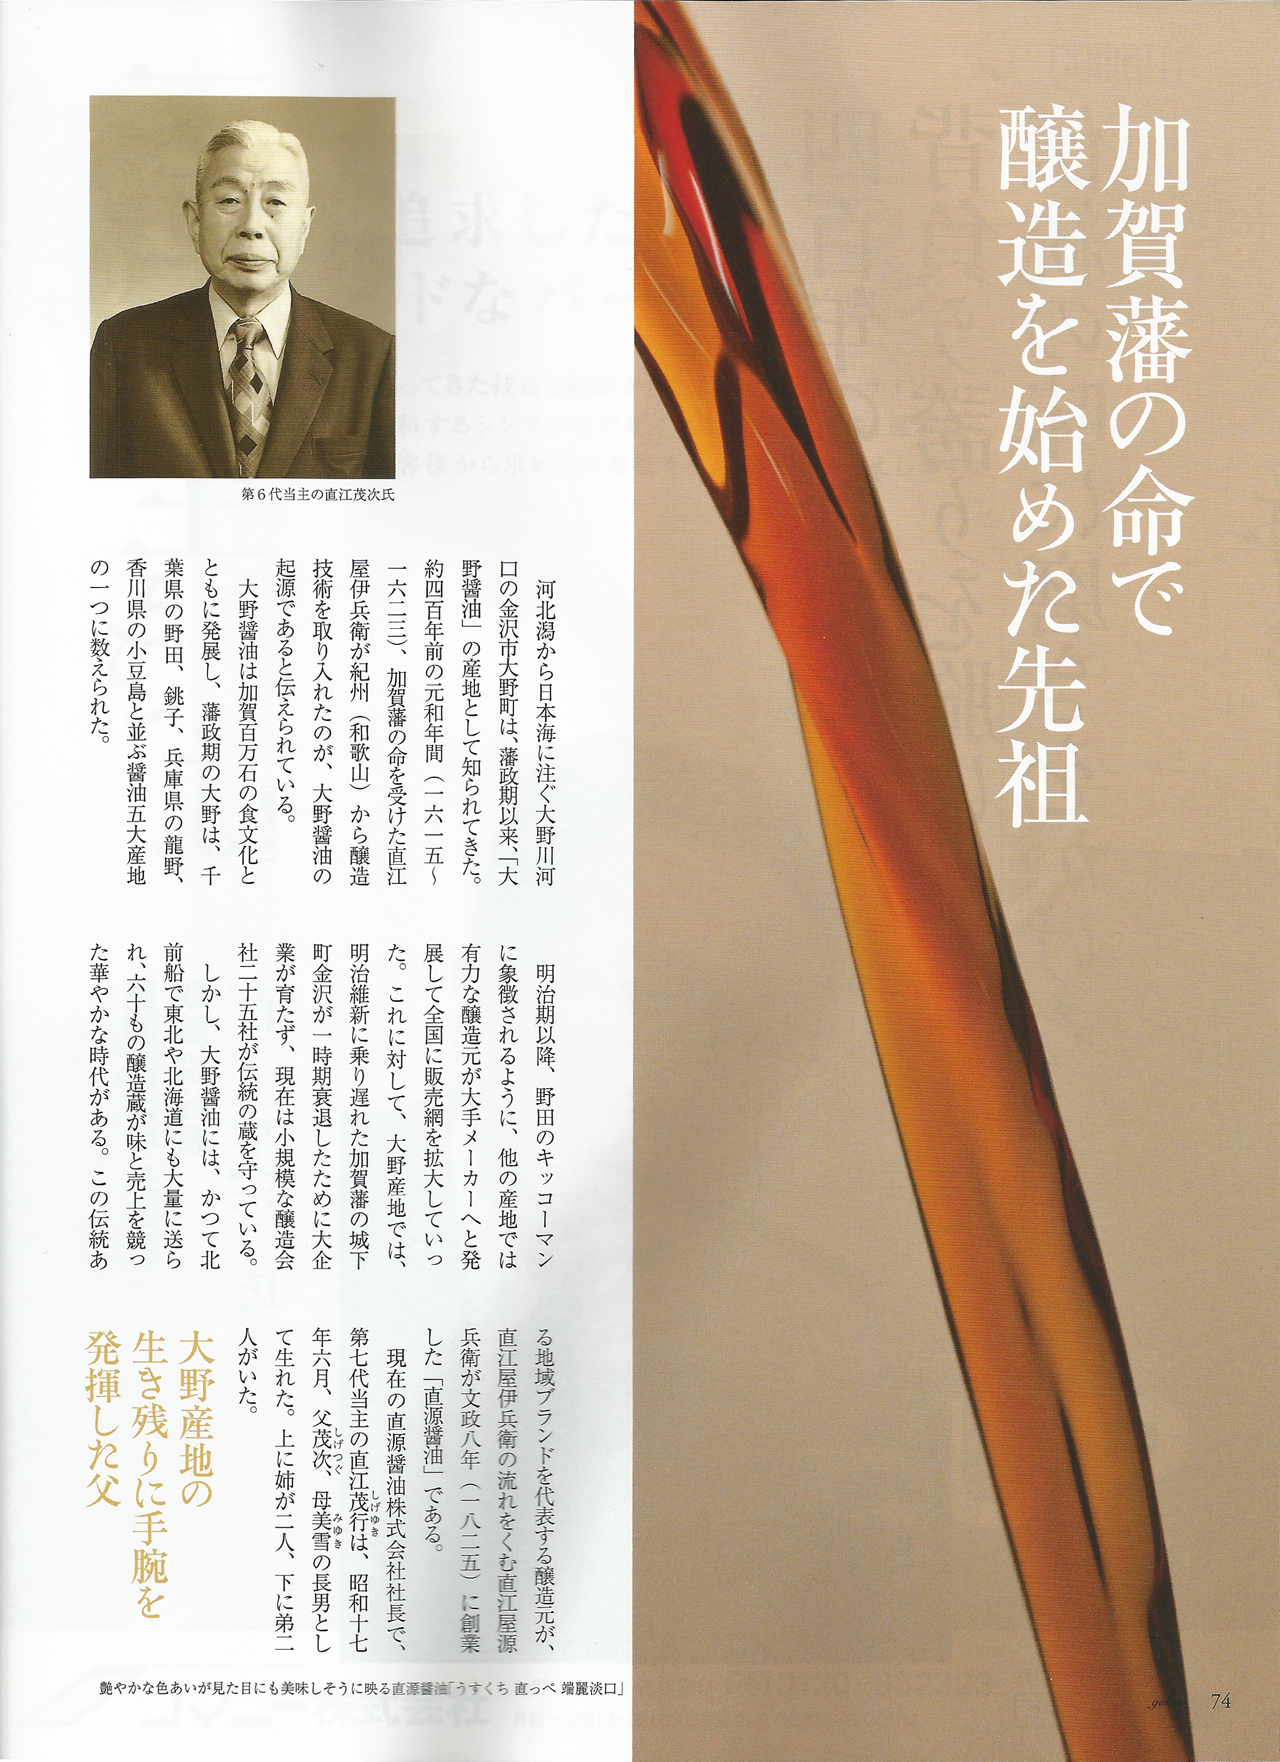 gakuto magazine 2011, 7-8, Vol 44, Naoe Shigeyuki